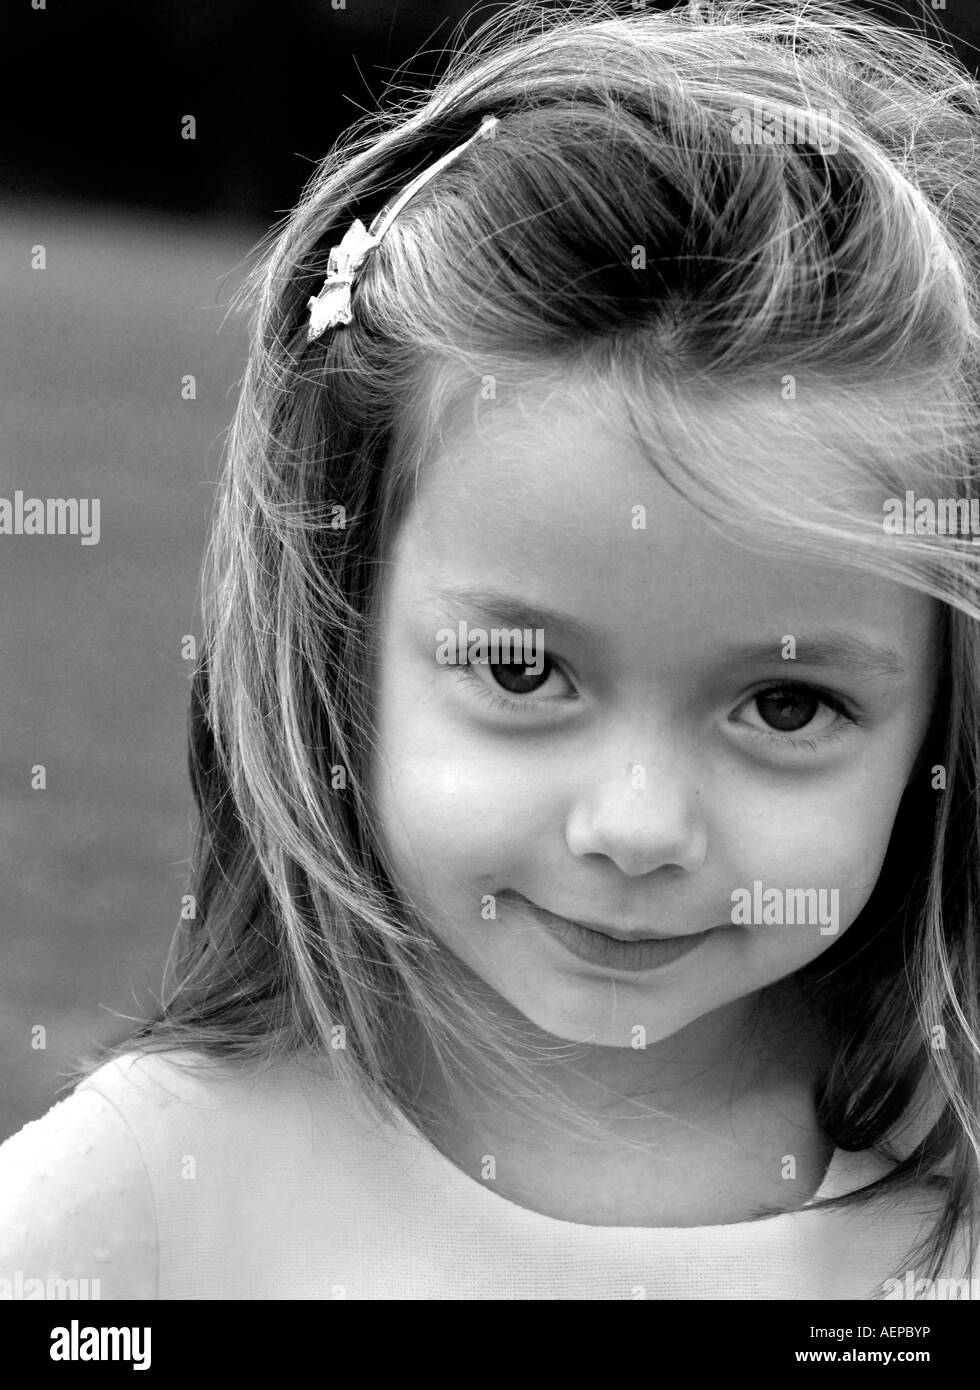 Le noir et blanc portrait of a little girl smiling Banque D'Images